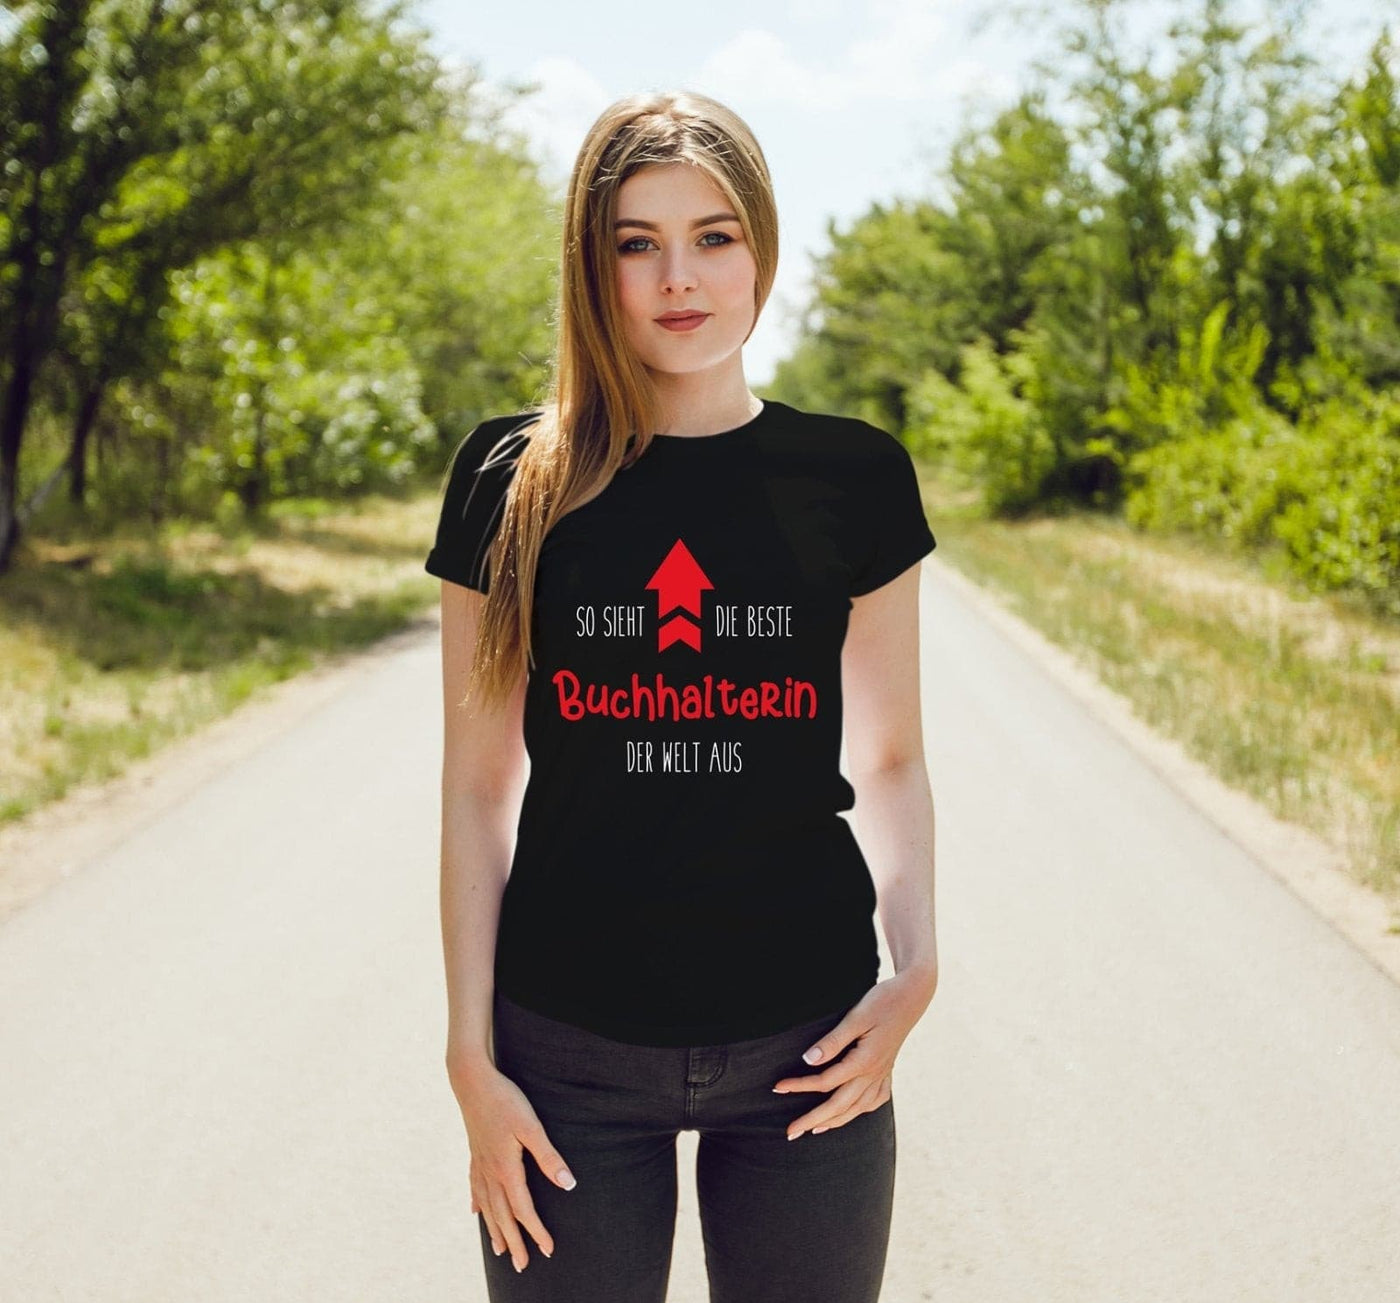 Bild: T-Shirt Damen - So sieht die beste Buchhalterin der Welt aus Geschenkidee